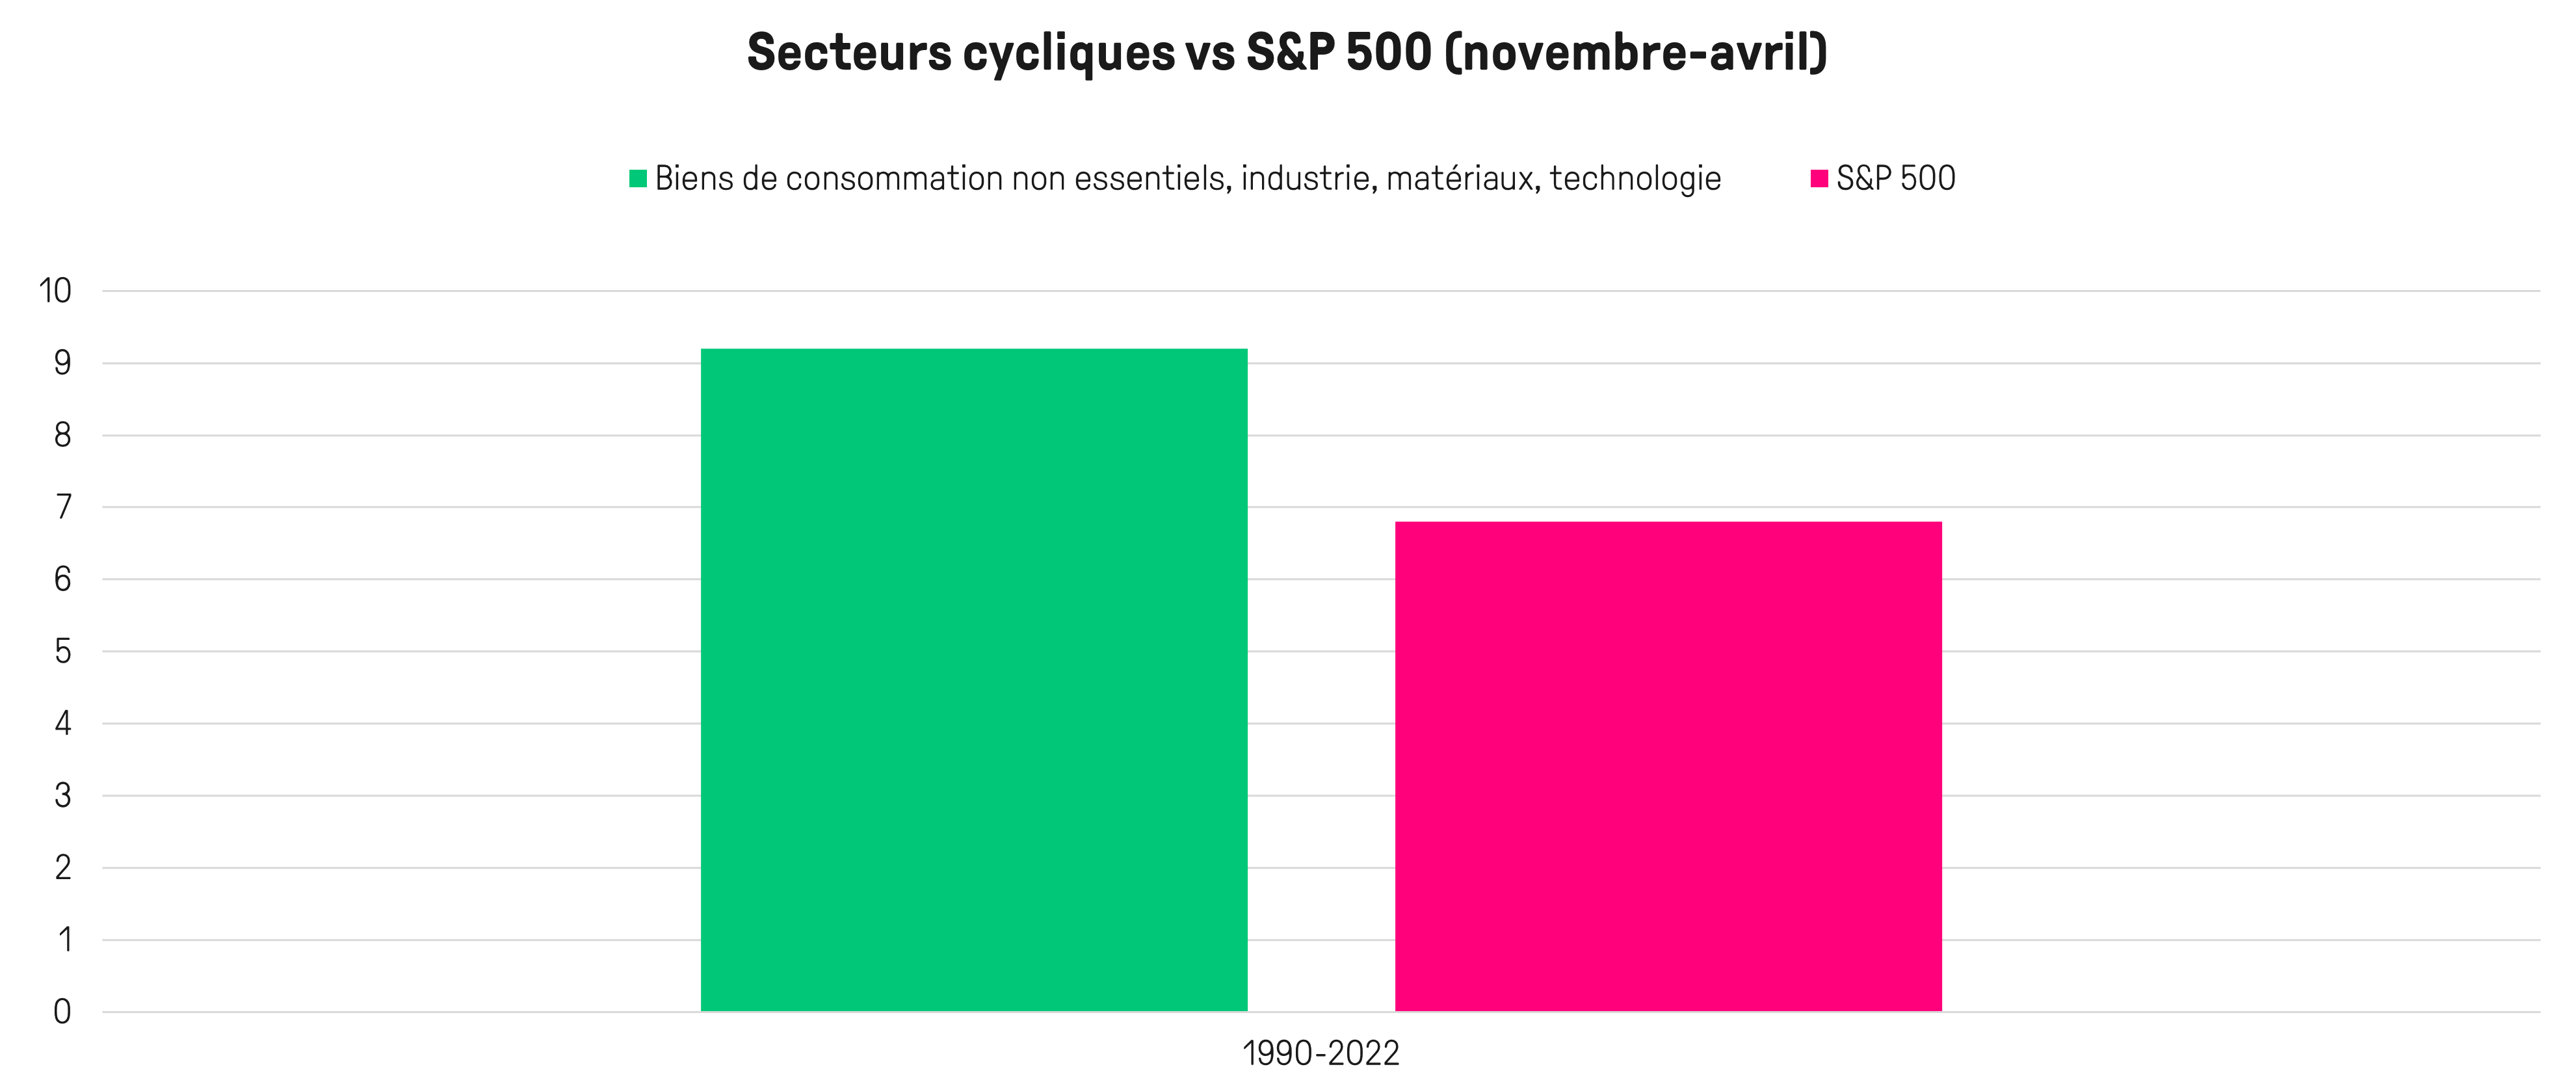 vente actions – vendre actions - rendement cycliques vs S&P